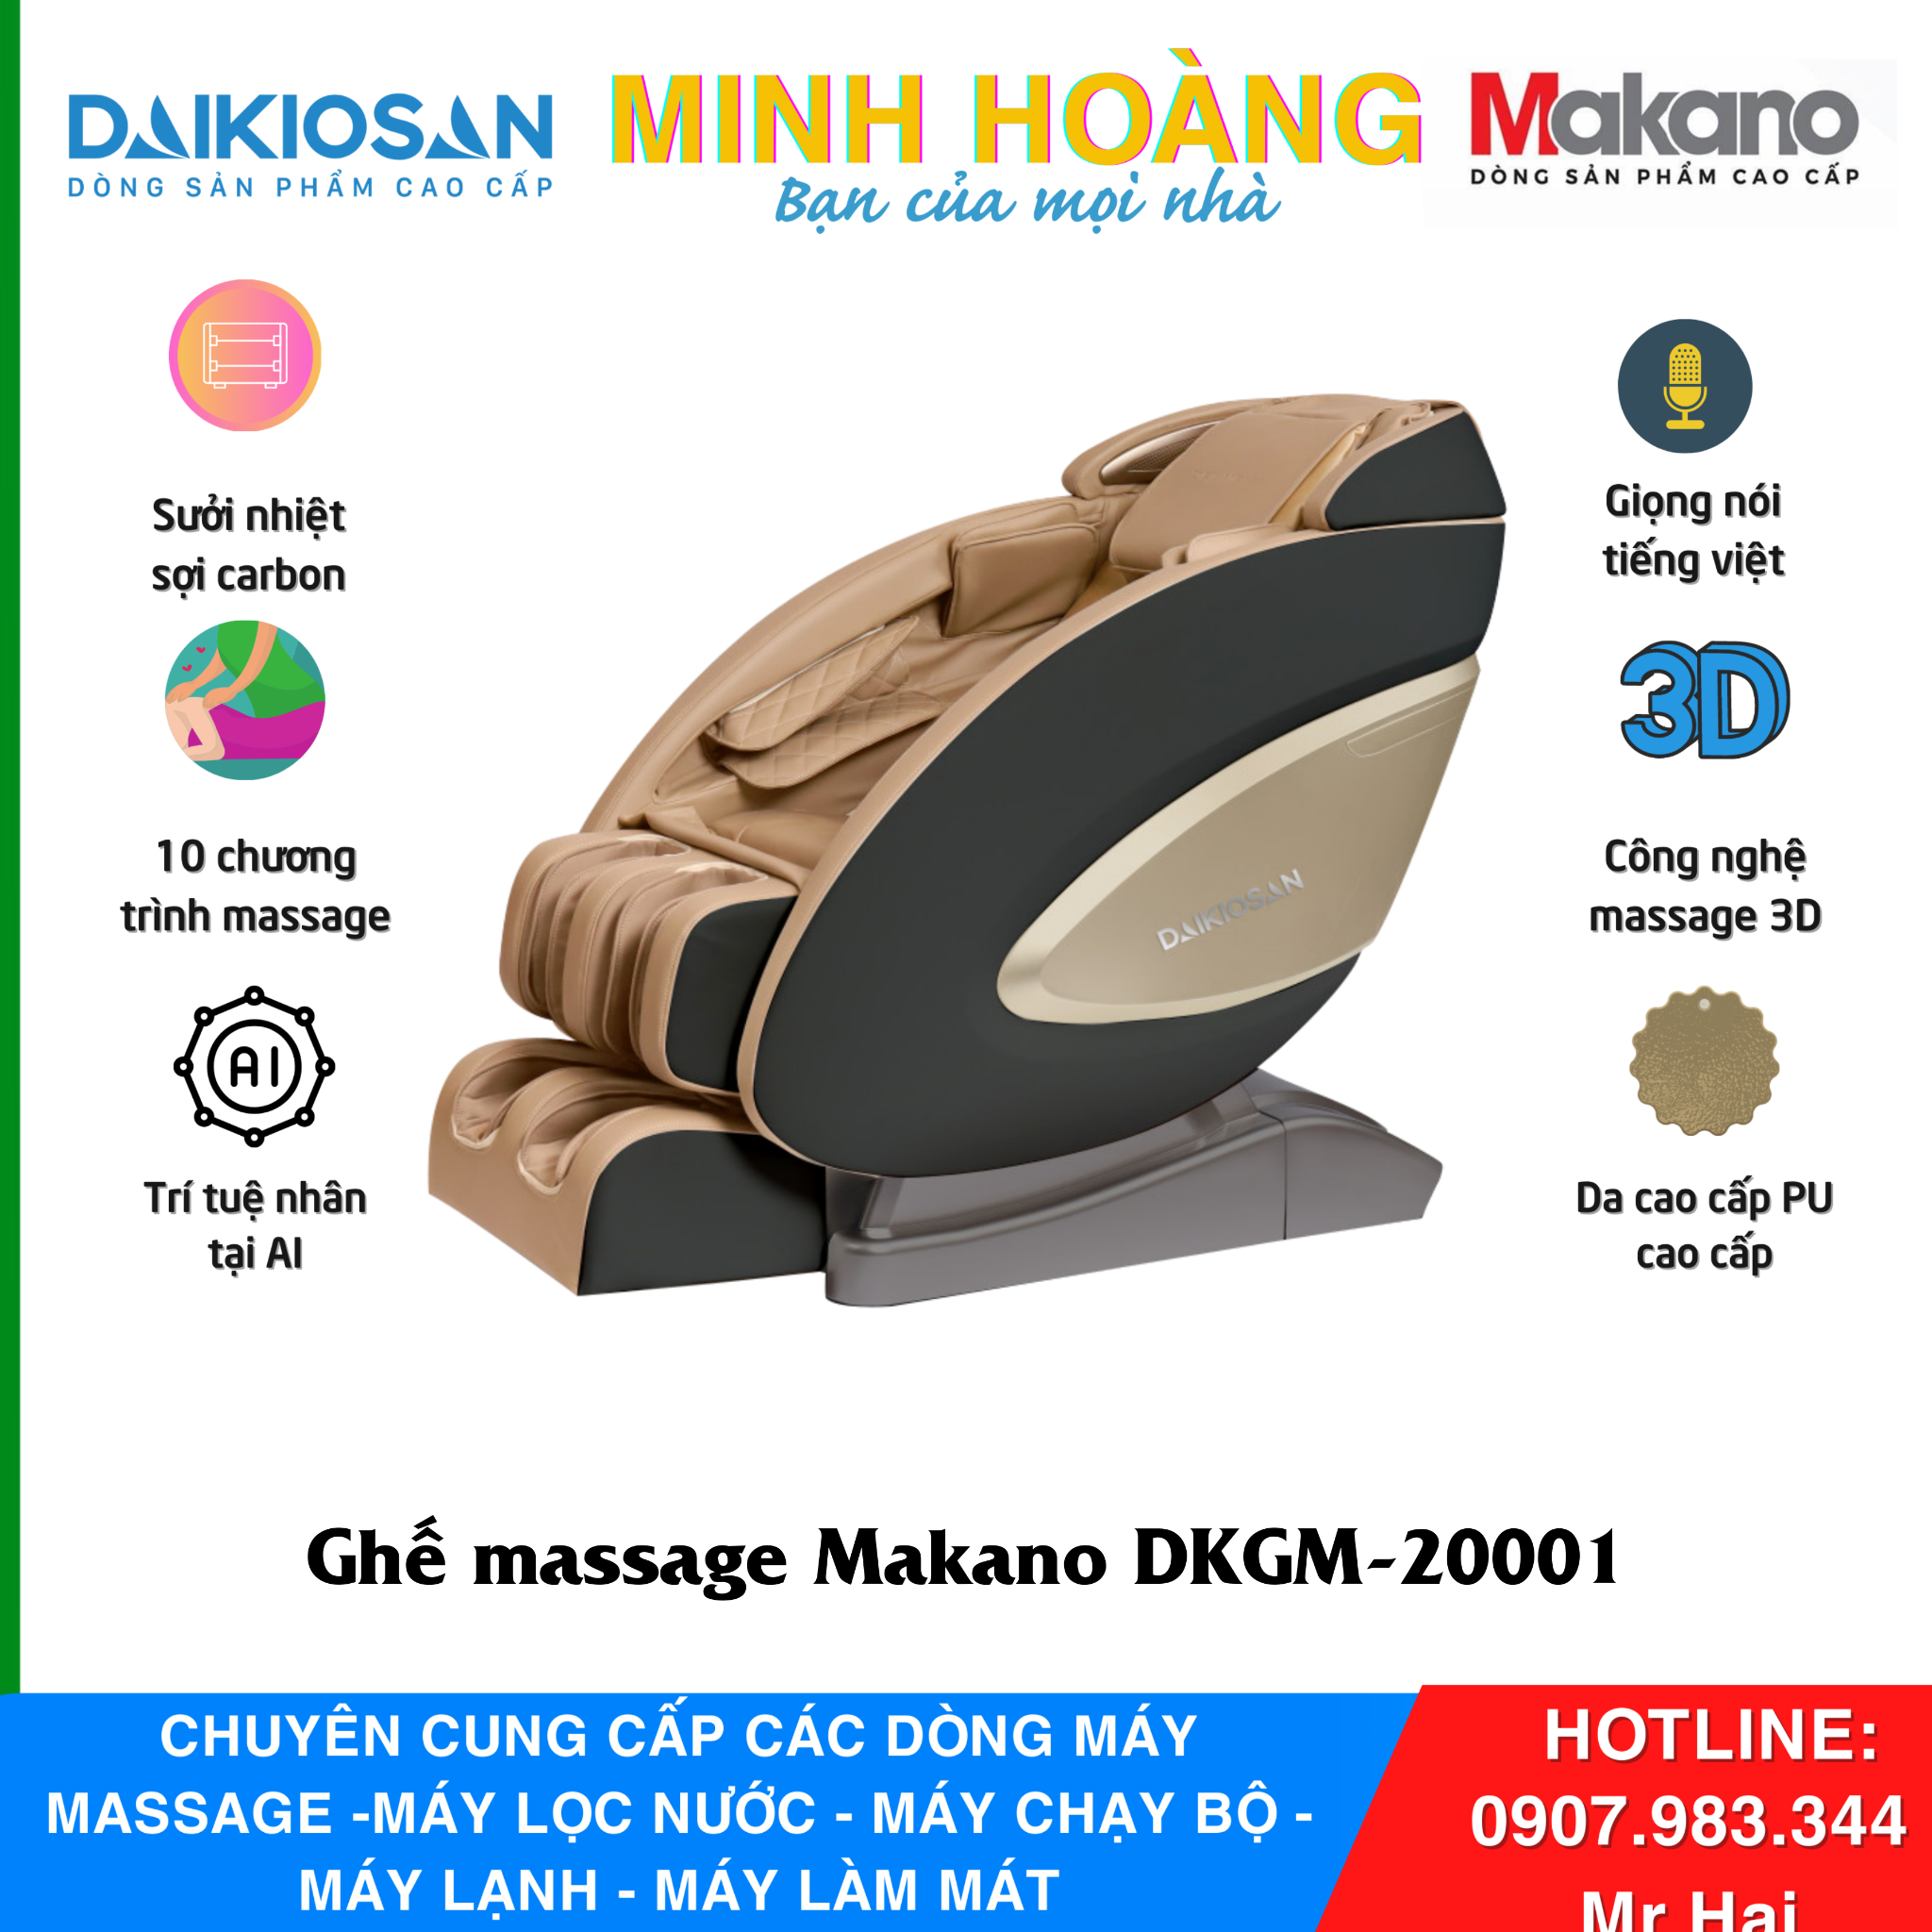  Ghế Massage Makano DVGM-20001 